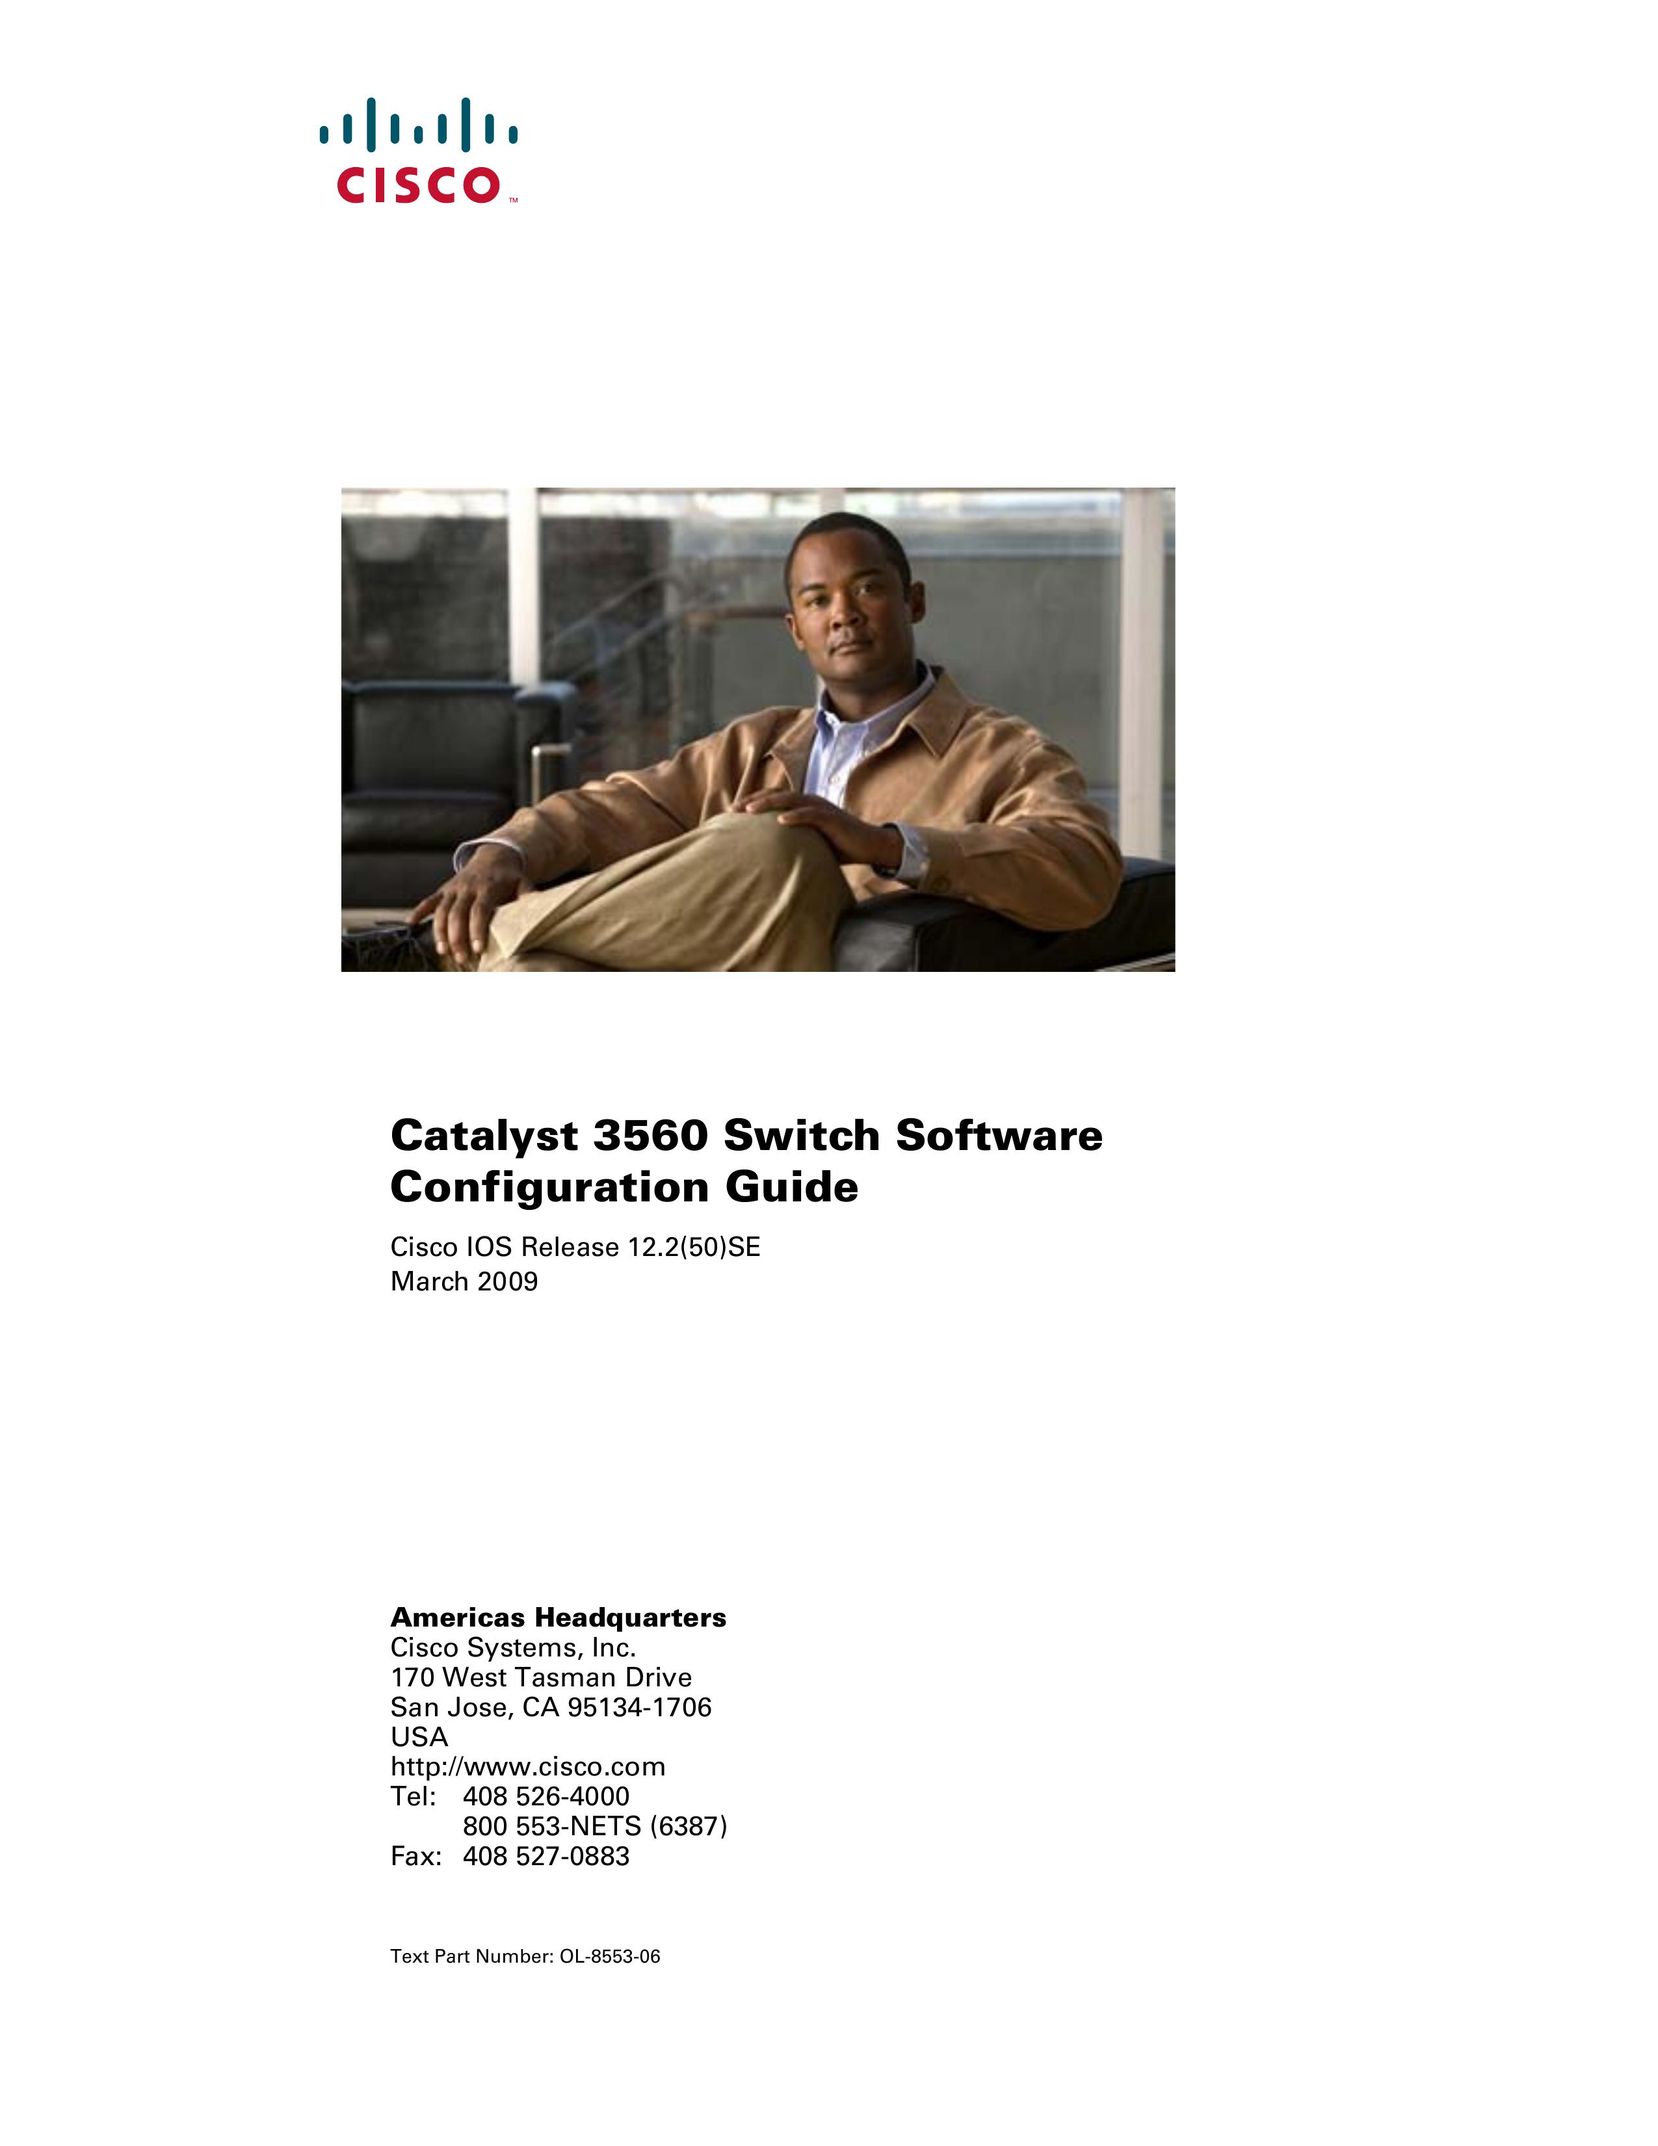 Cisco Systems 3560 Frozen Dessert Maker User Manual